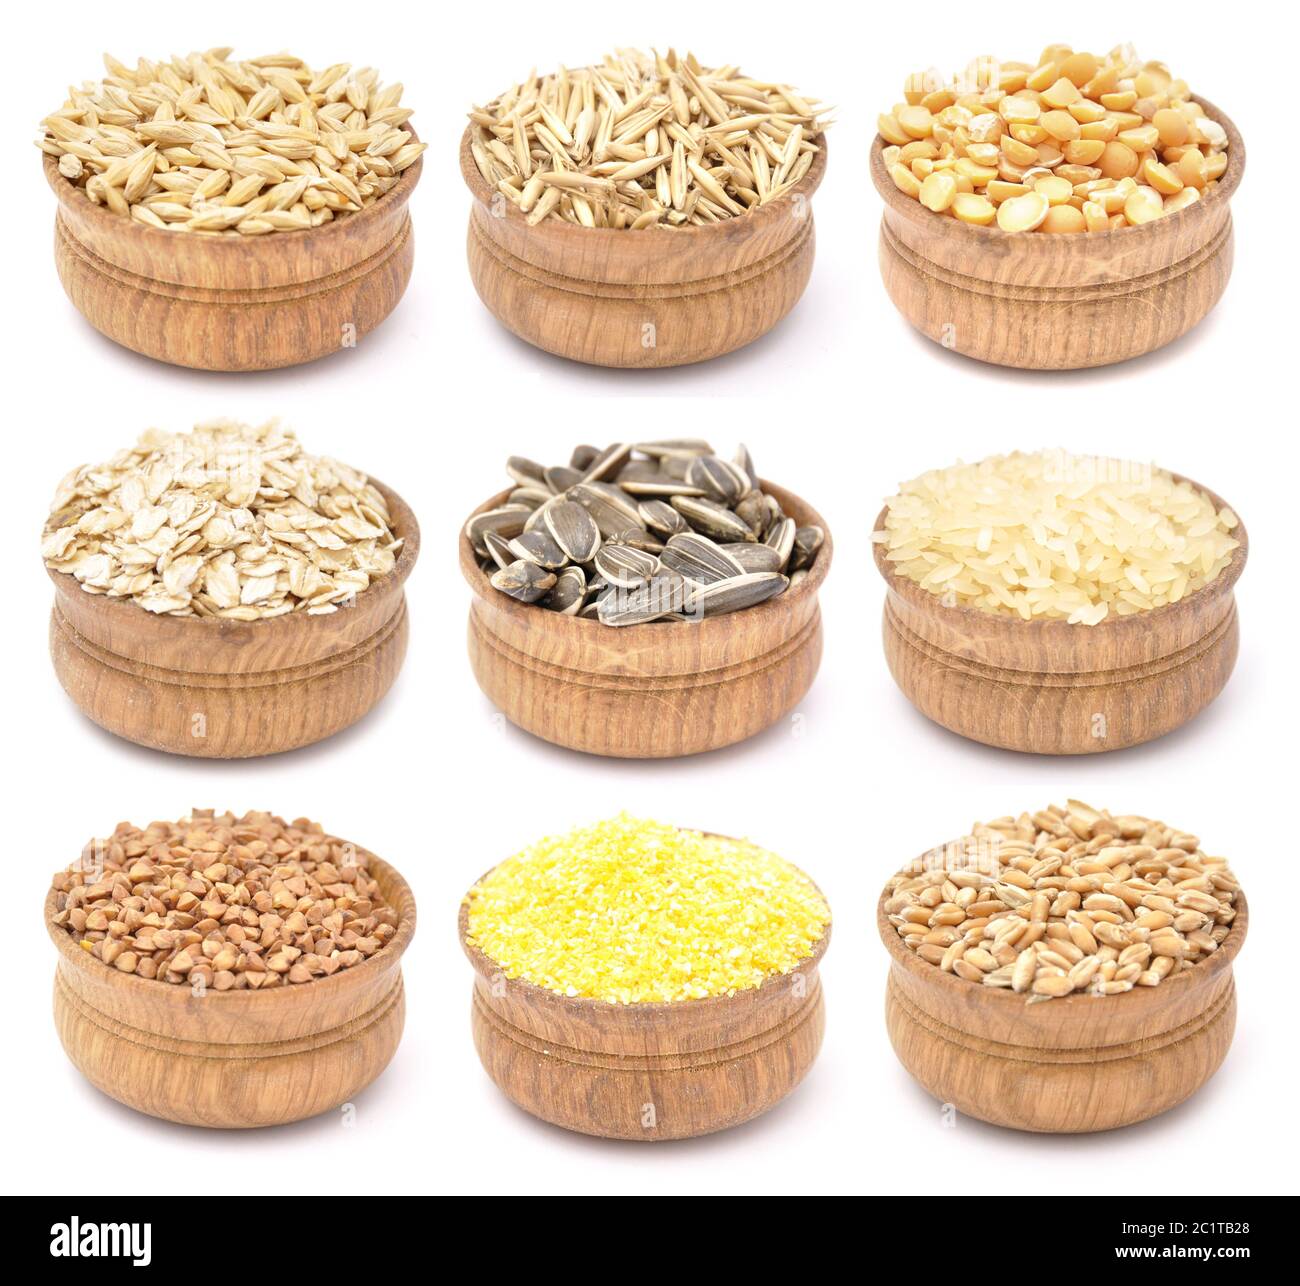 Cereali in ciotole di legno Foto Stock